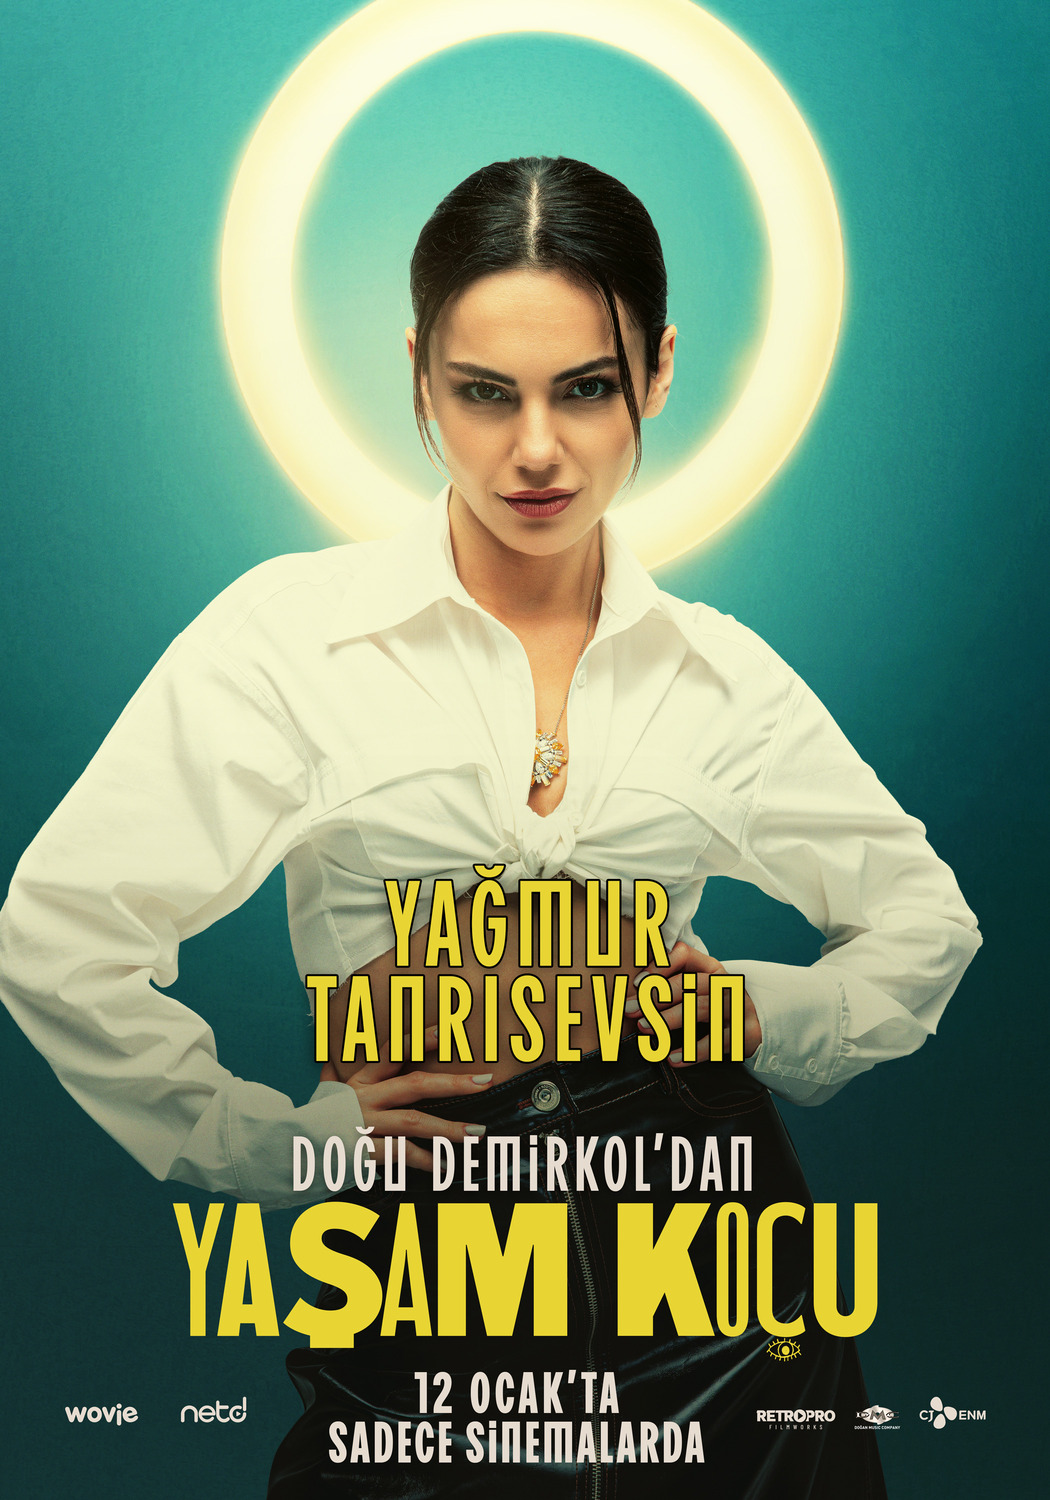 Extra Large Movie Poster Image for Yasam Koçu (#5 of 5)